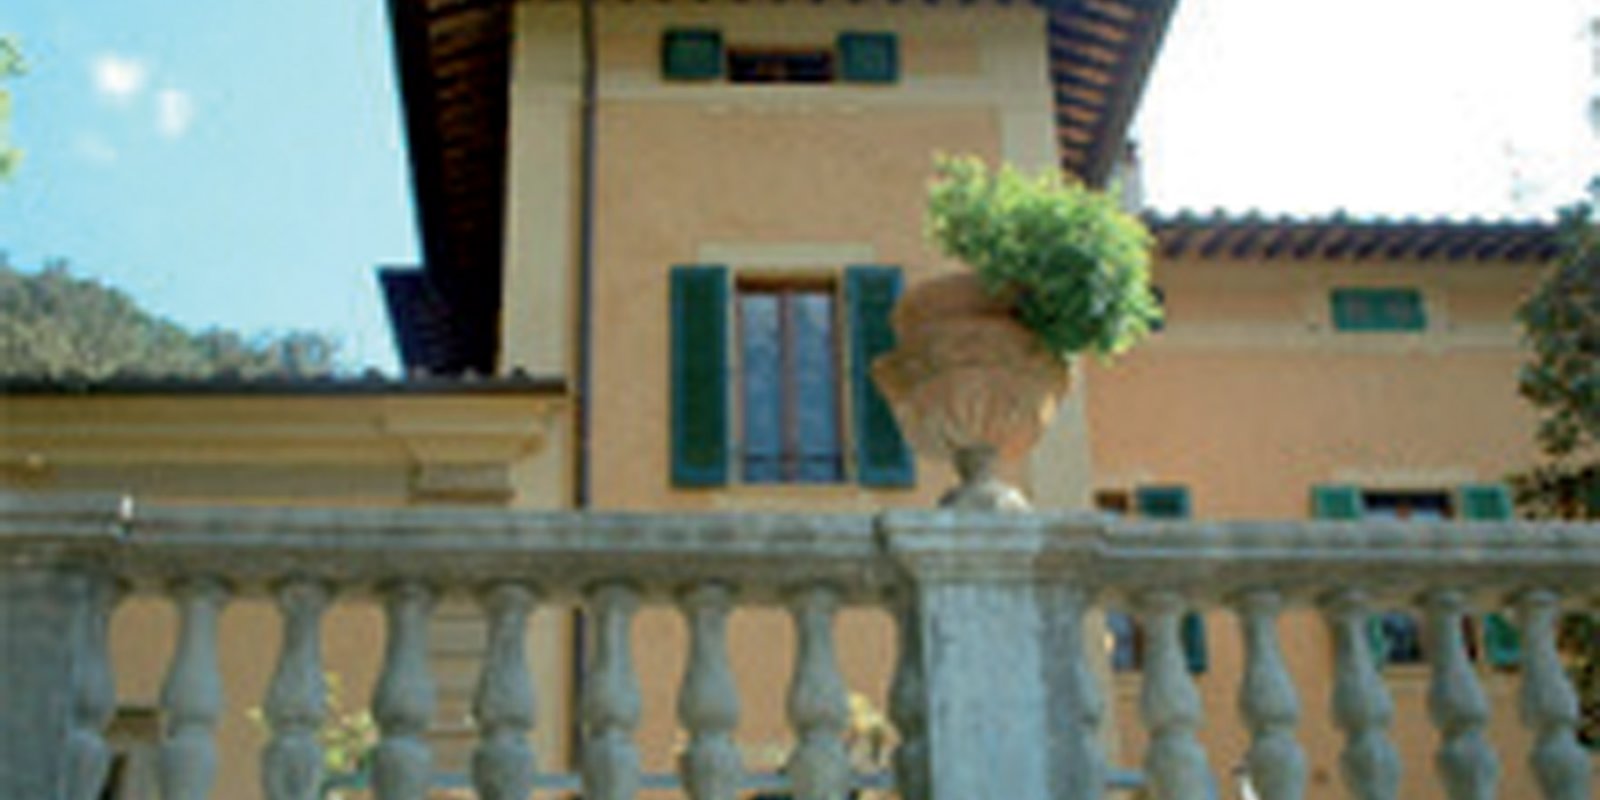 Proprietà Villa Strozzi Sacrati